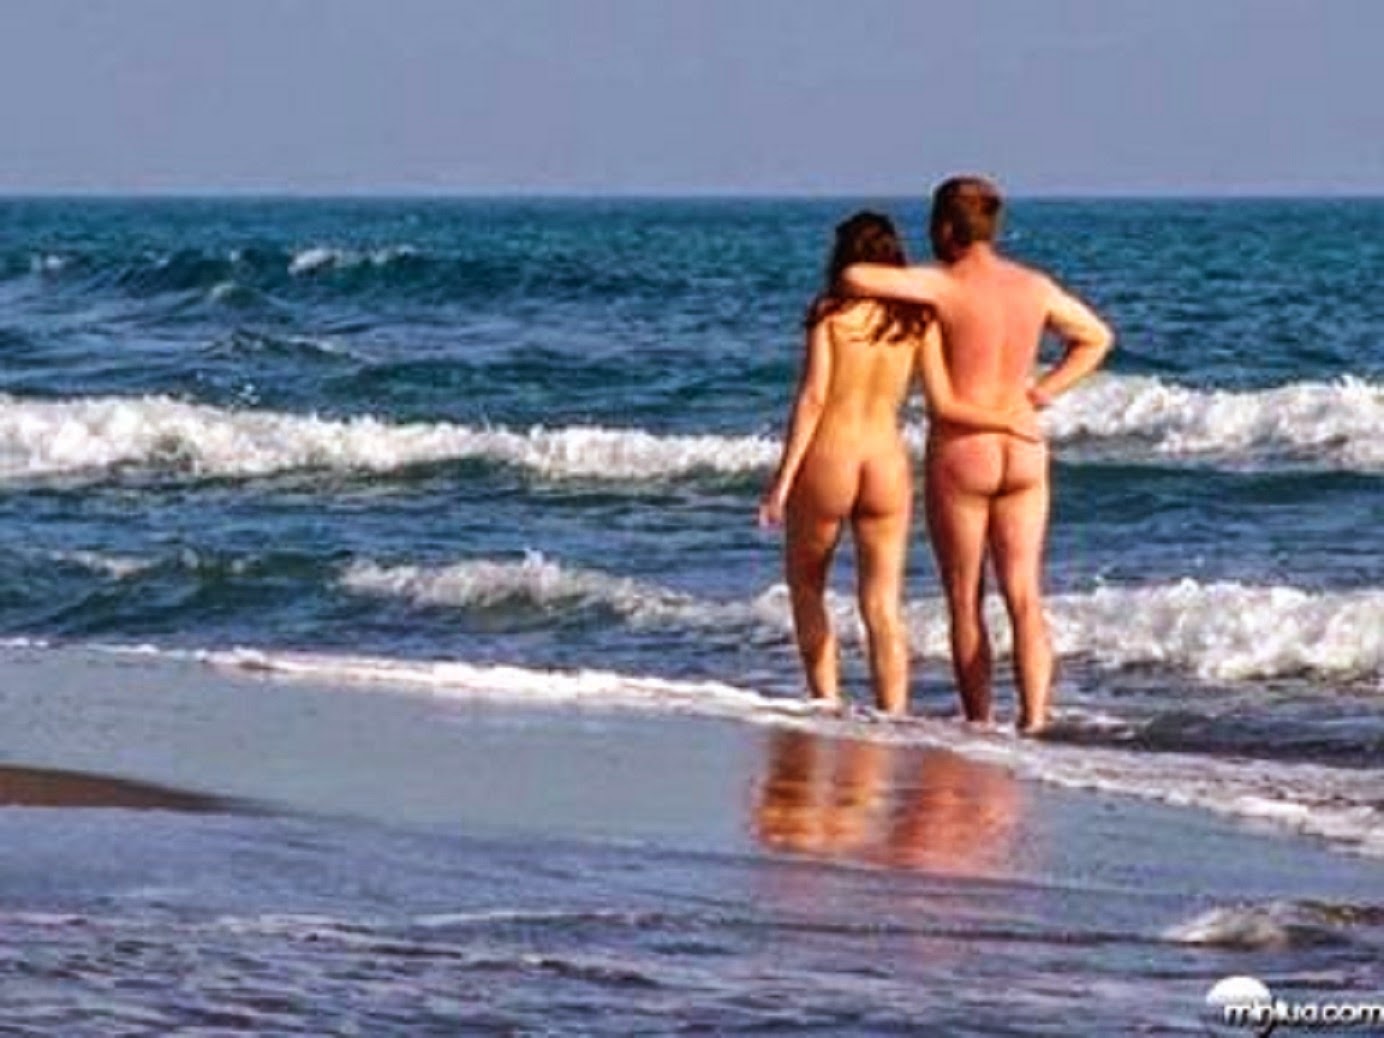 Ada bojana nude beach